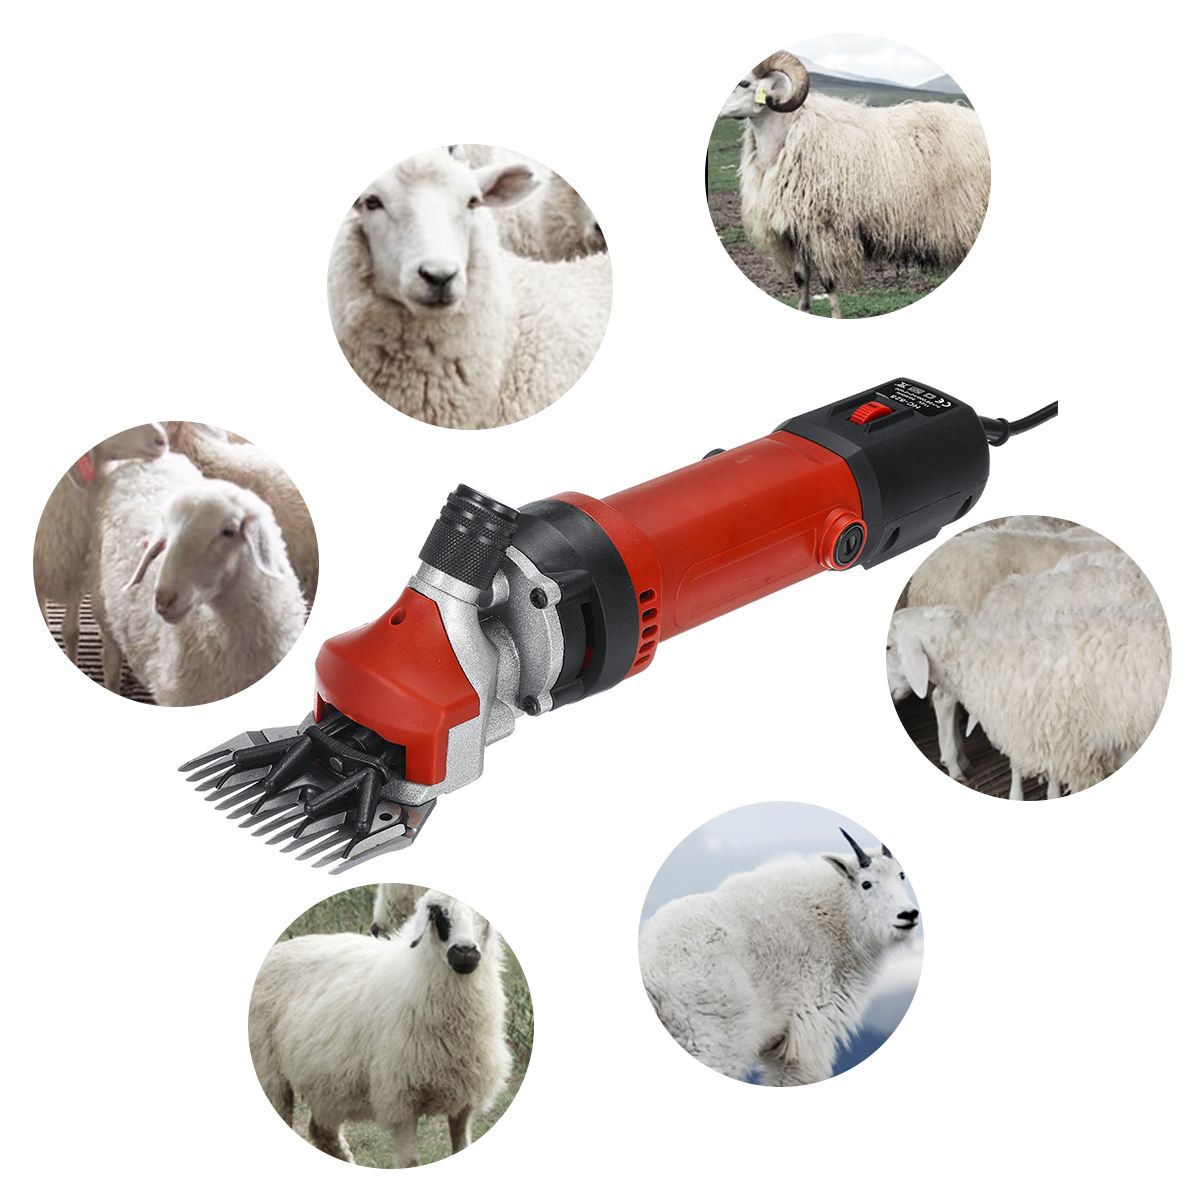 1200W 110V Electric Sheep Goat Shearing Machine Clipper Farm Shears Cutter Wool Scissor Cut Machine